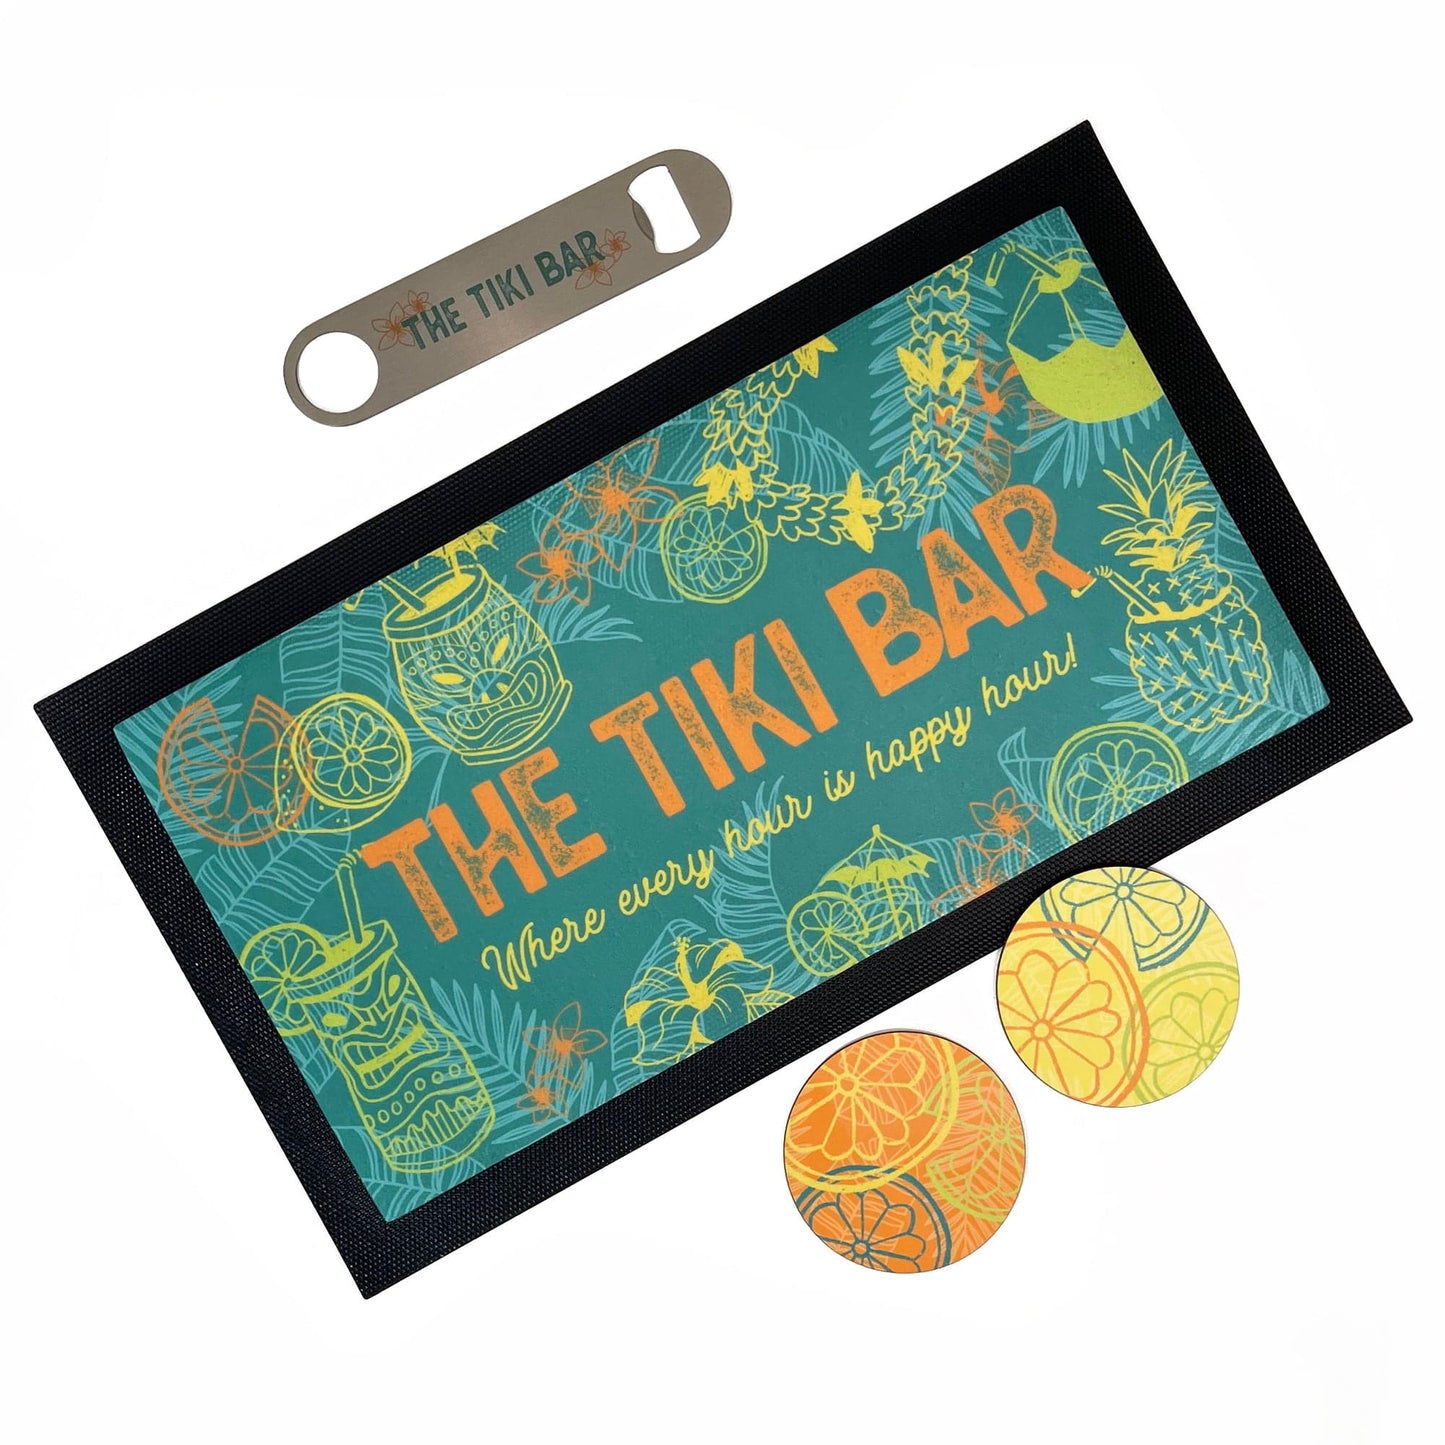 Personalised Tiki Bar Home Pub Set